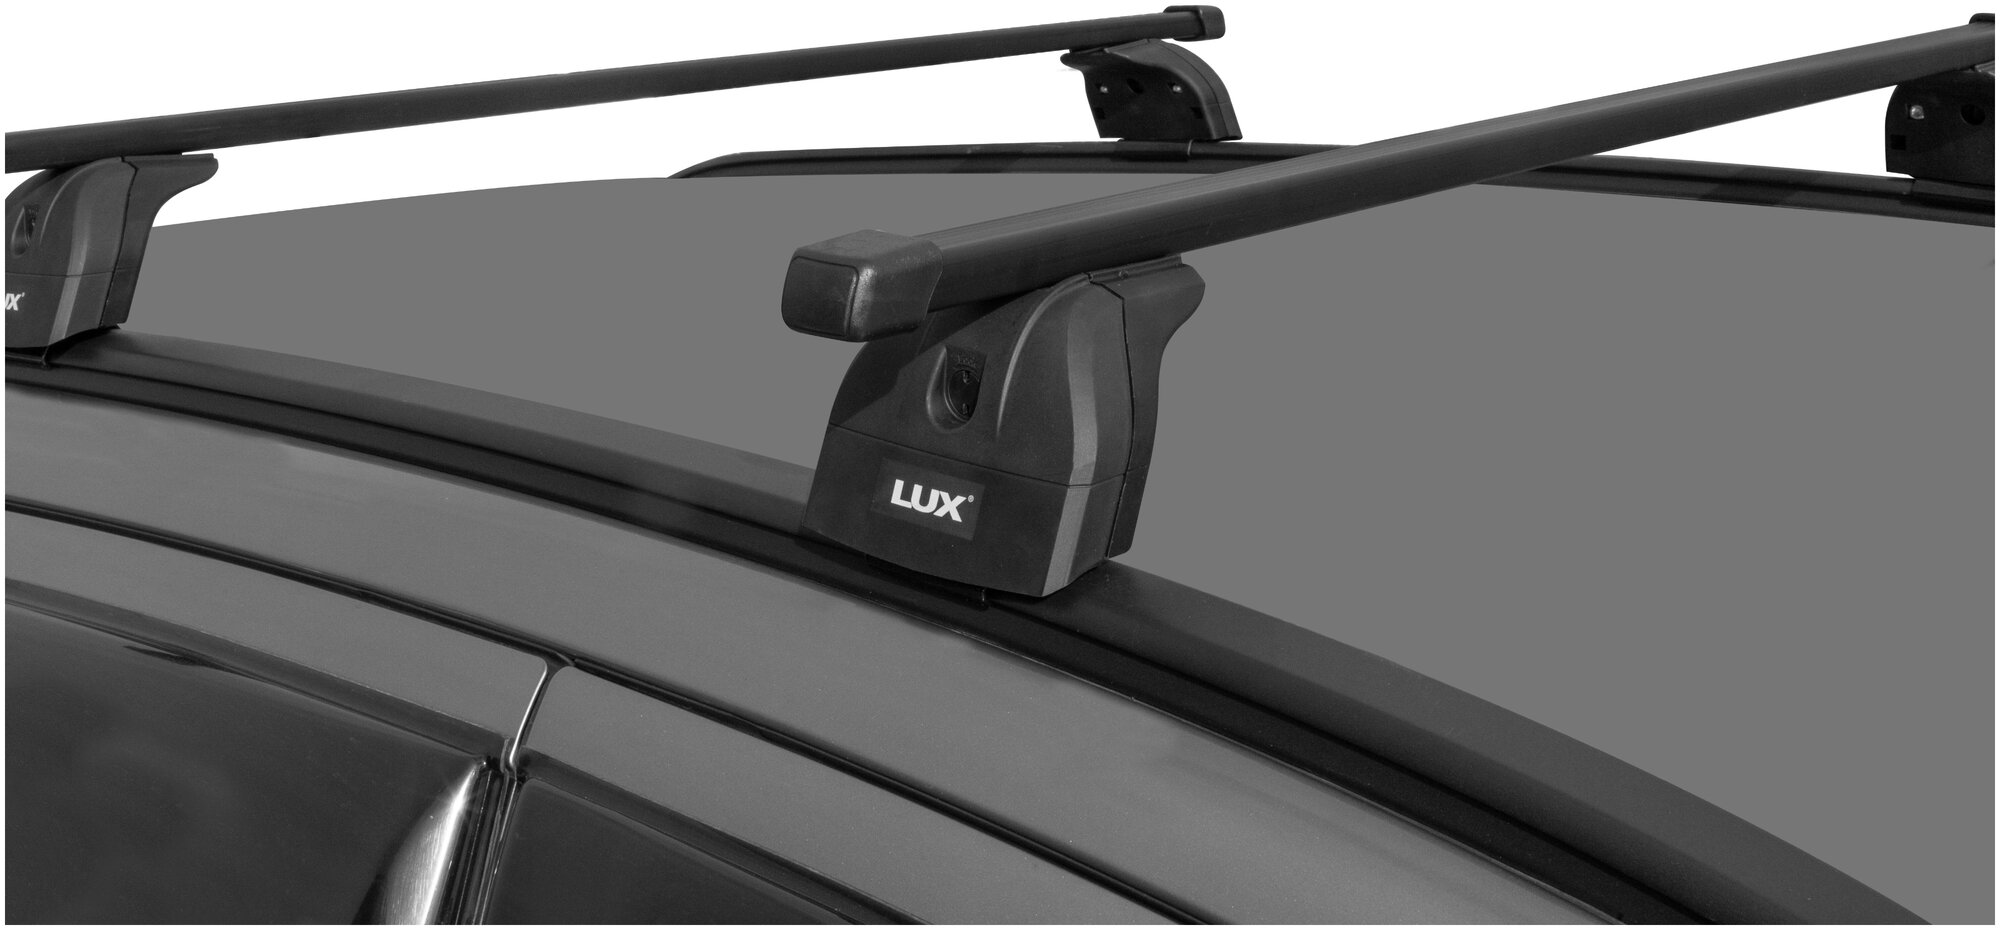 Багажная система 2 "LUX" с дугами 1,3м прямоугольными в пластике для а/м Suzuki Jimny IV 2019-. г. в.